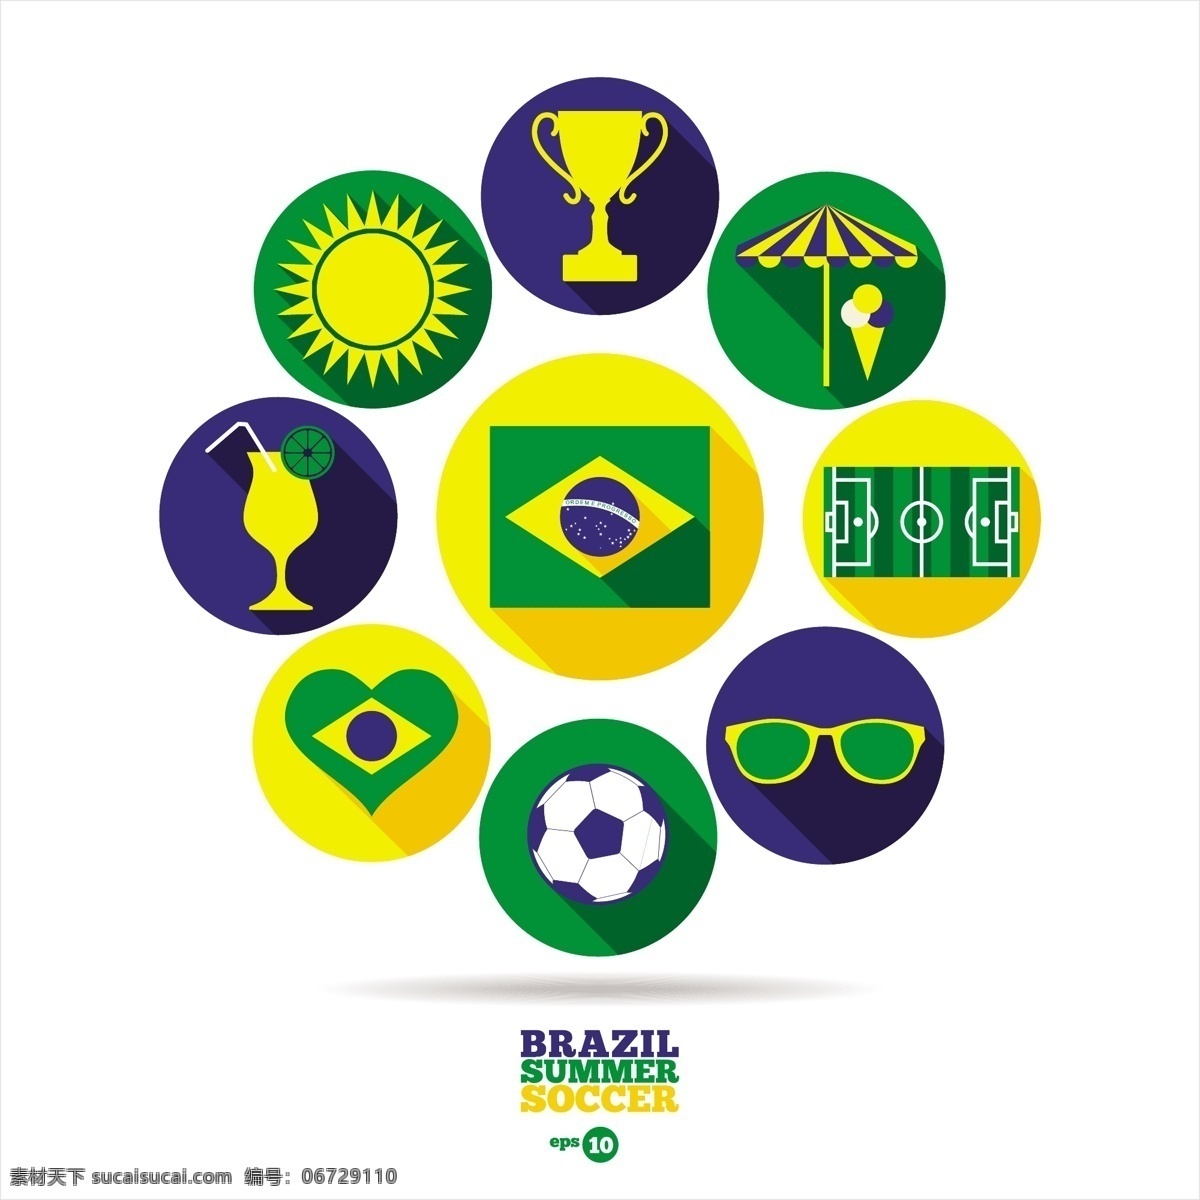 巴西 夏季 足球 元素 夏季足球 巴西夏季 足球元素 奖杯 冷饮 白色